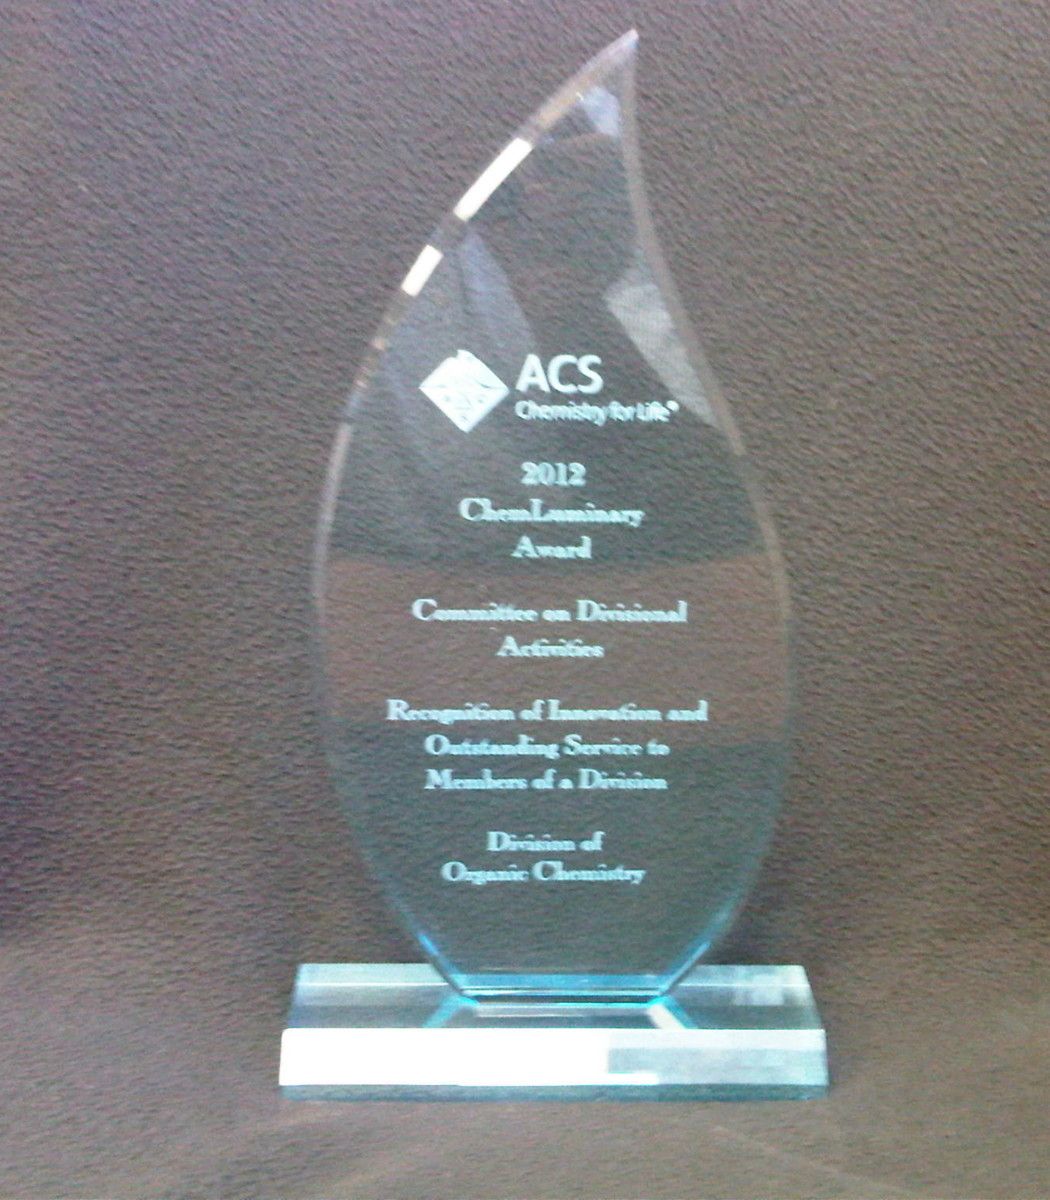 2012 ChemLuminary Award Picture